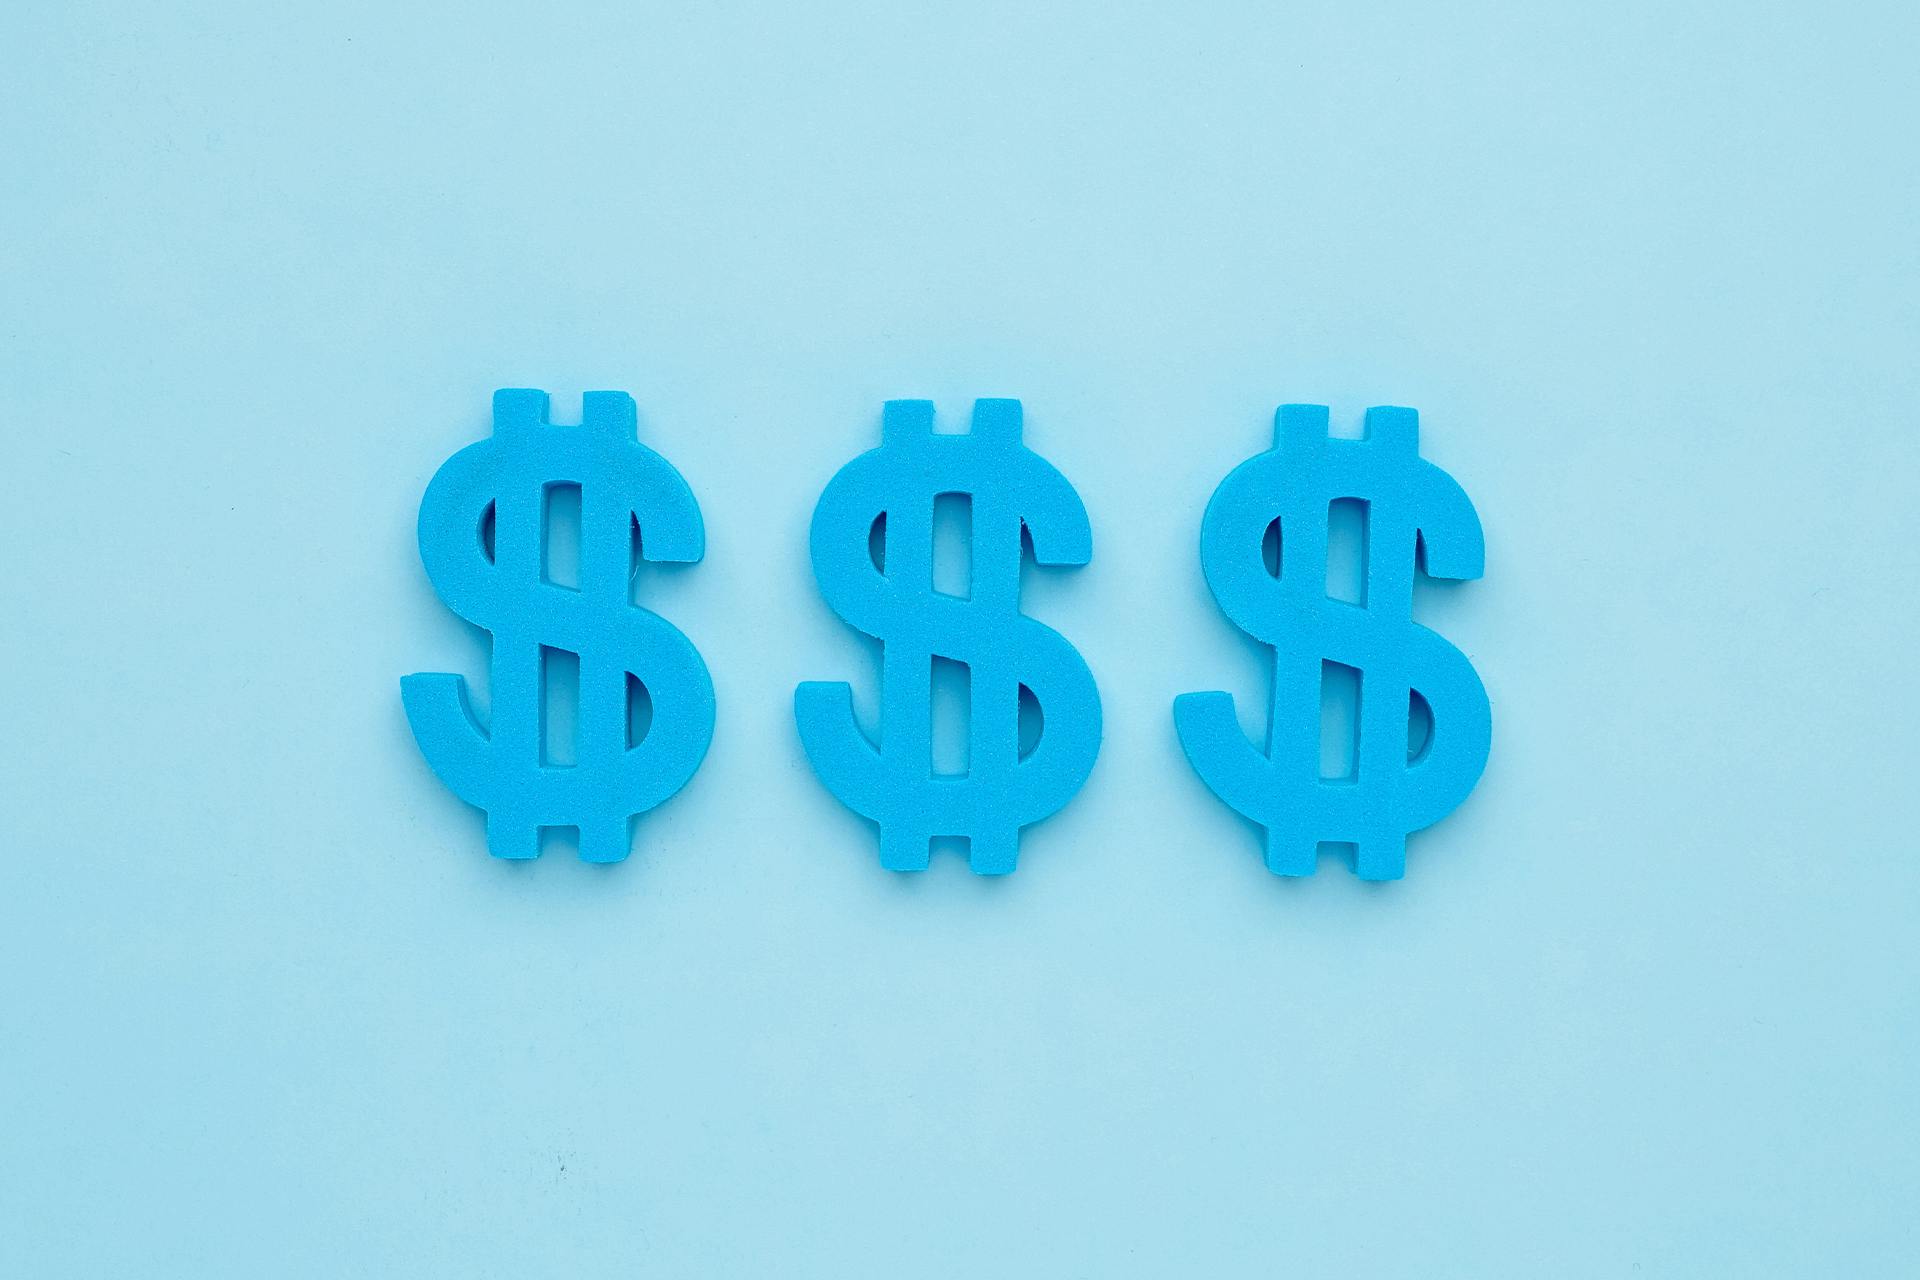 蓝色背景下的三个蓝色美元标志。美元符号代表你的营销团队可以通过Facebook领先广告产生的收入。